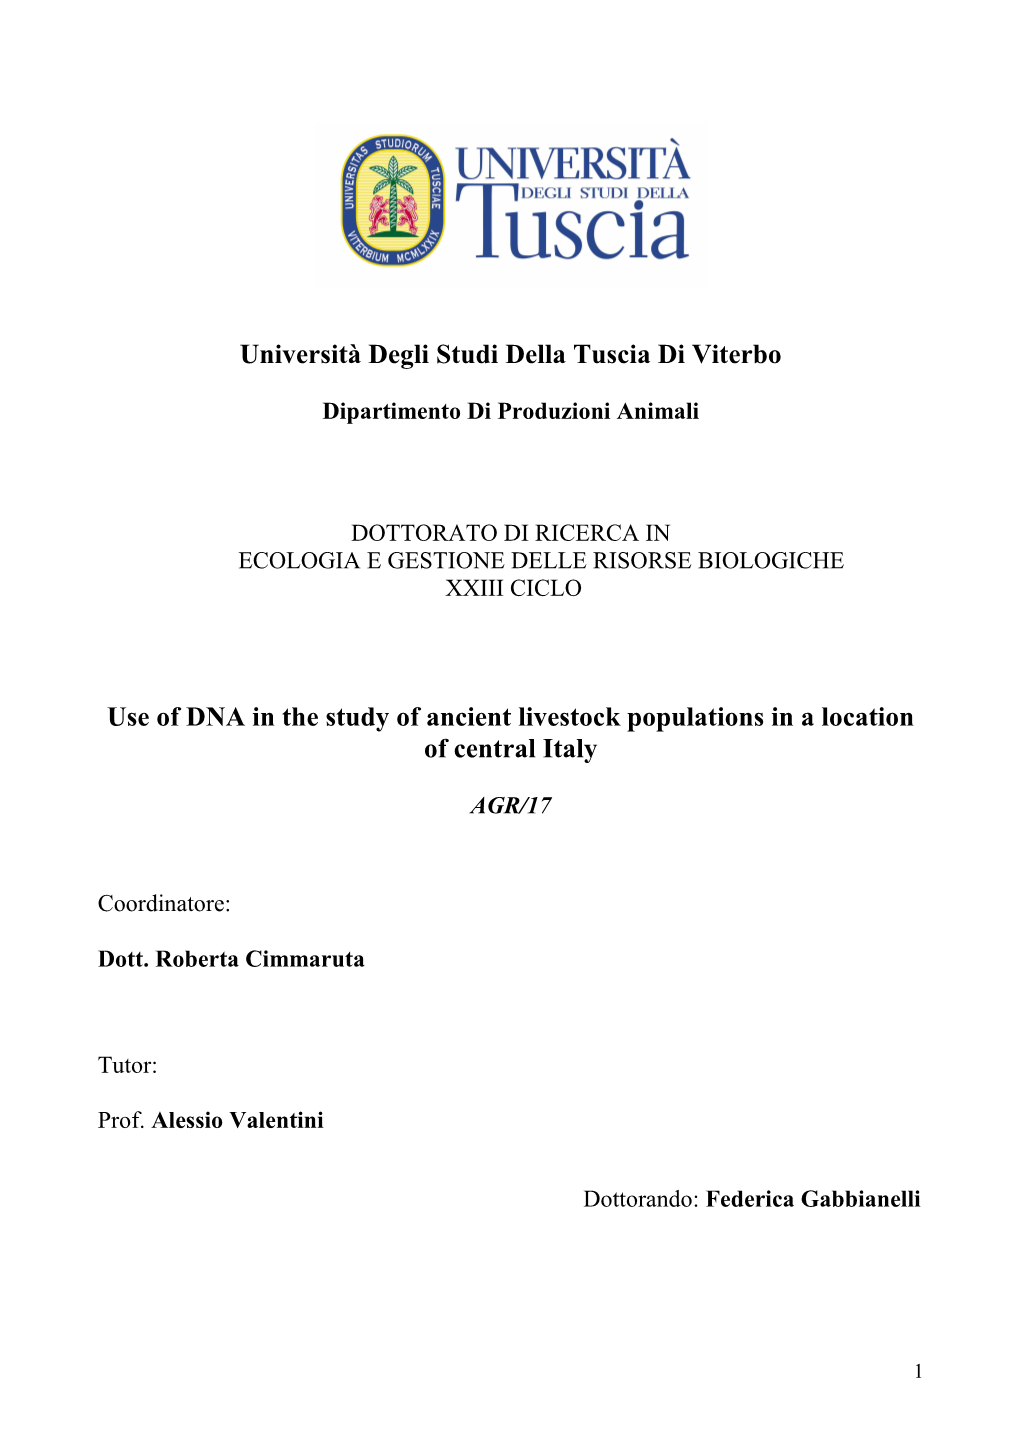 Università Degli Studi Della Tuscia Di Viterbo Use of DNA in the Study of Ancient Livestock Populations in a Location of Centra